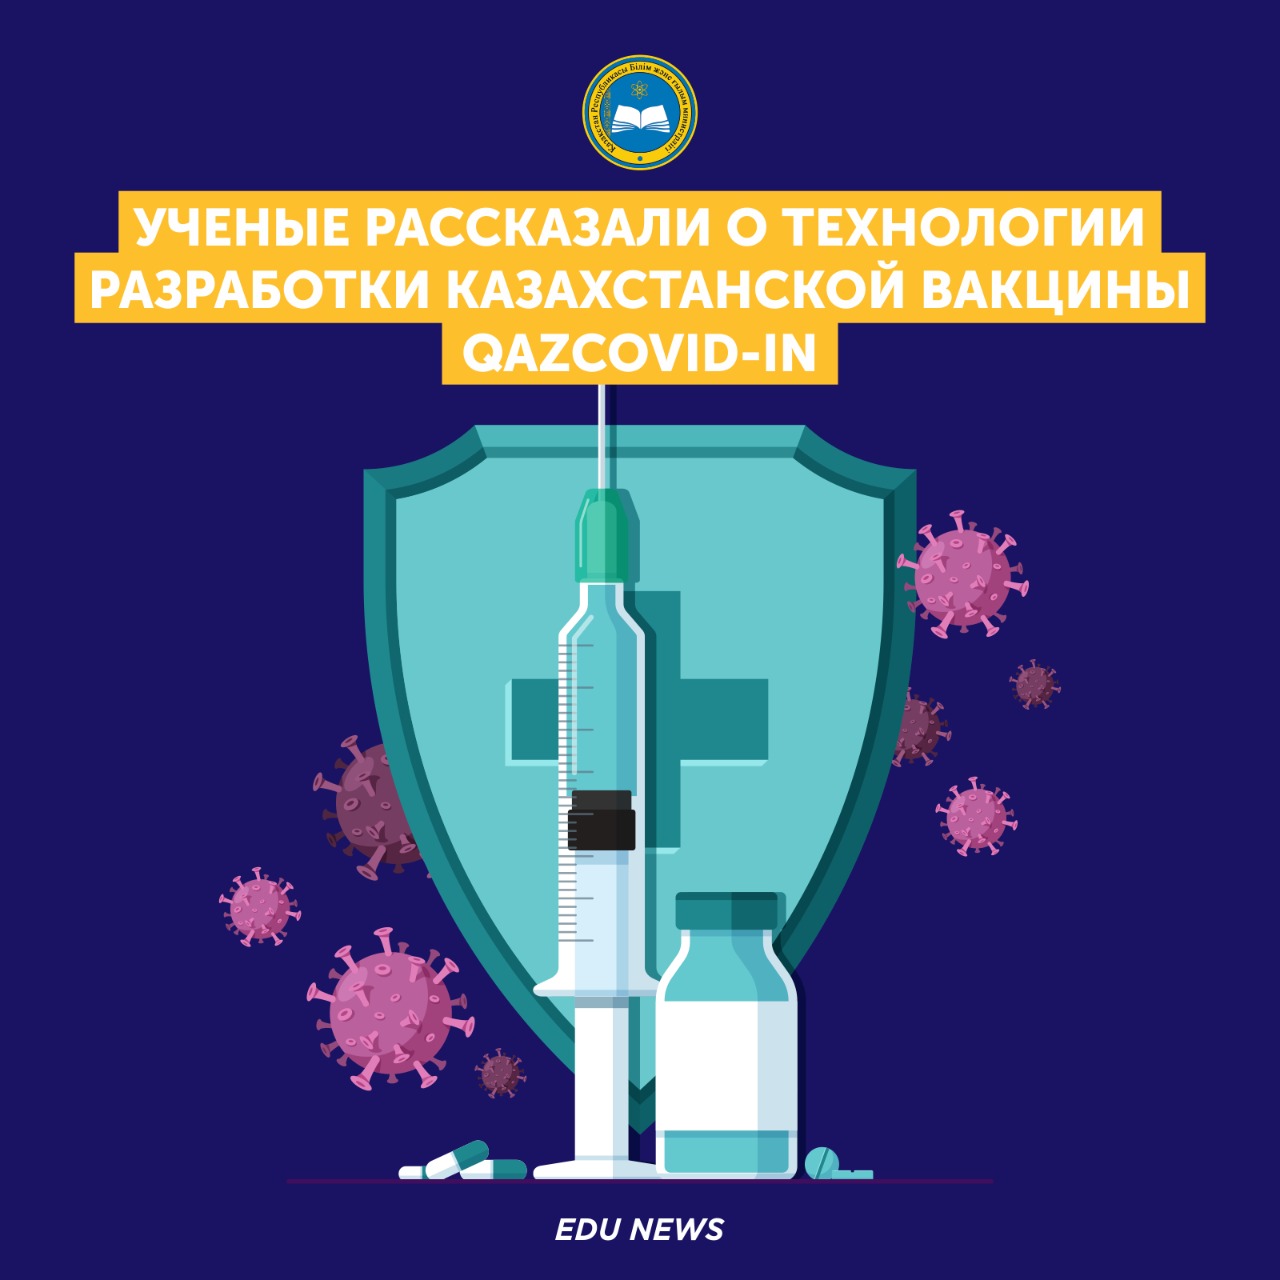 Ученые рассказали о технологии разработки казахстанской вакцины QazCovid-in